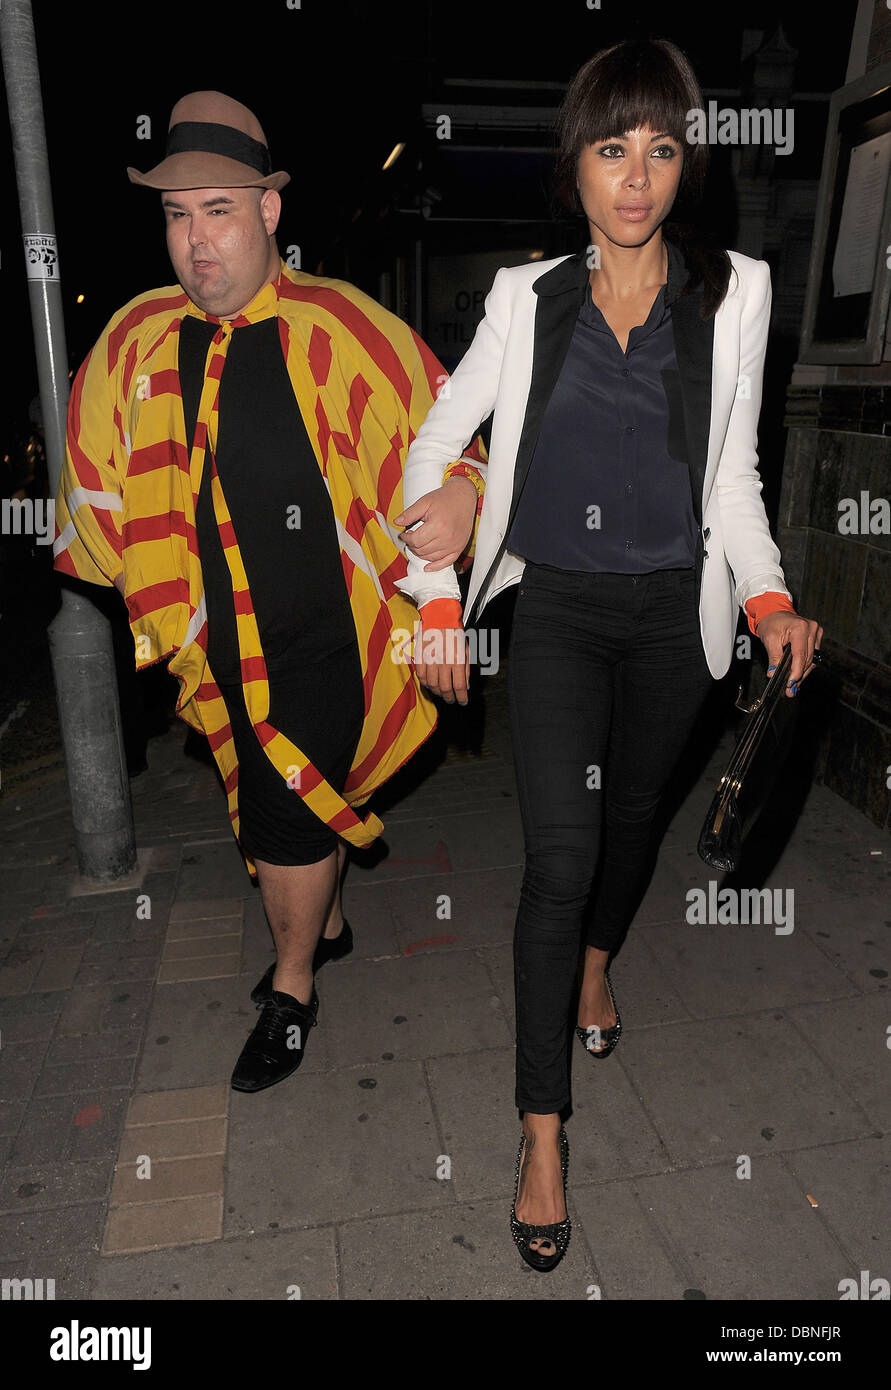 Ana Araujo y extrañamente vestido compañero dejando un pub en Kilburn. Londres, Inglaterra - 28.07.11 Foto de stock